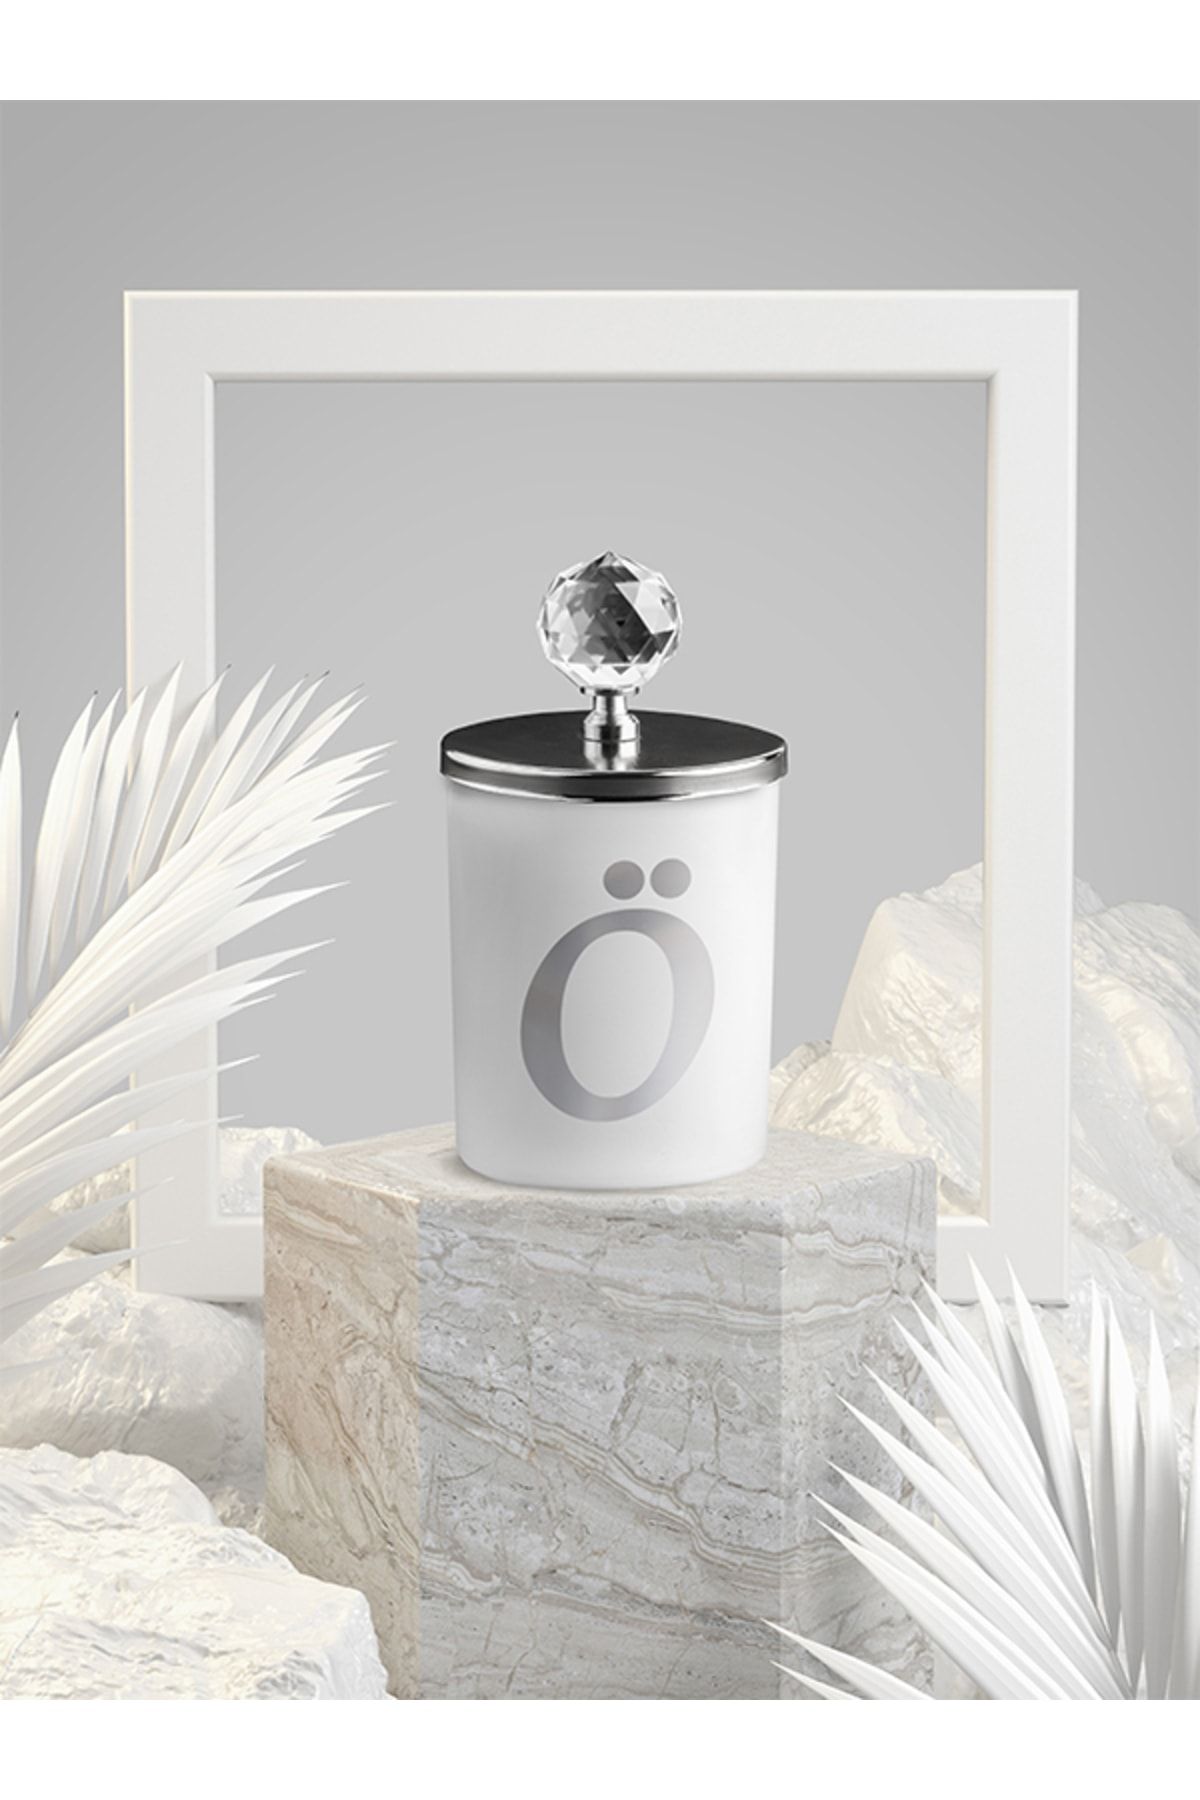 Tiem Concept Özel Tasarım Ö Harfli Vanilya Kokulu Gümüş Kristal Tepelikli Beyaz Bardak Mum